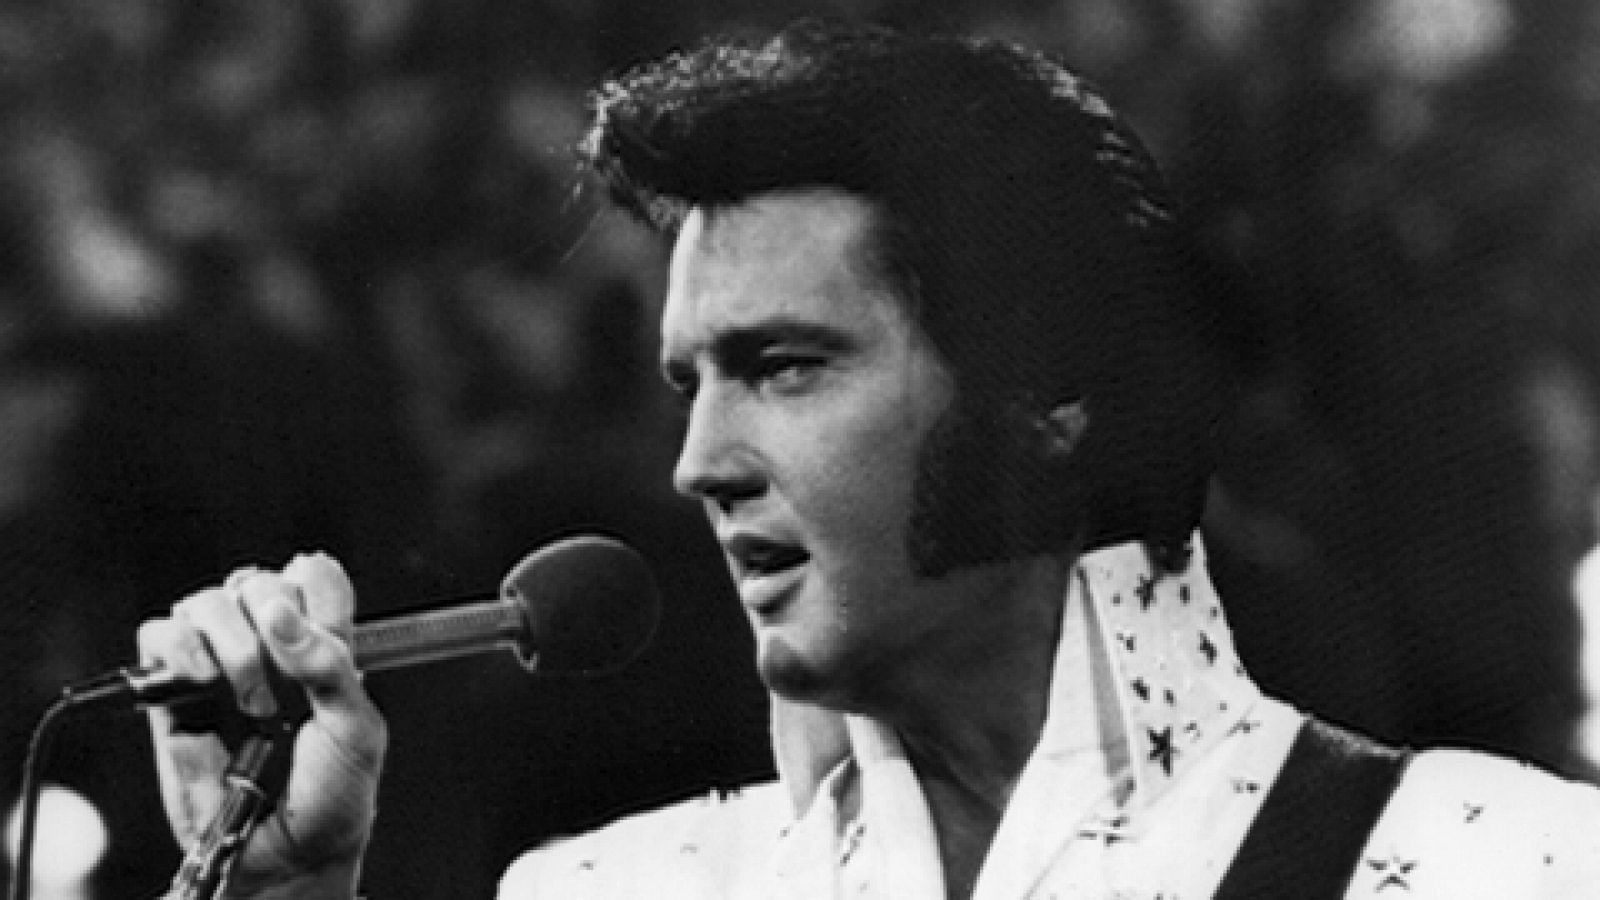 Se cumplen 40 años de la muerte de Elvis Presley